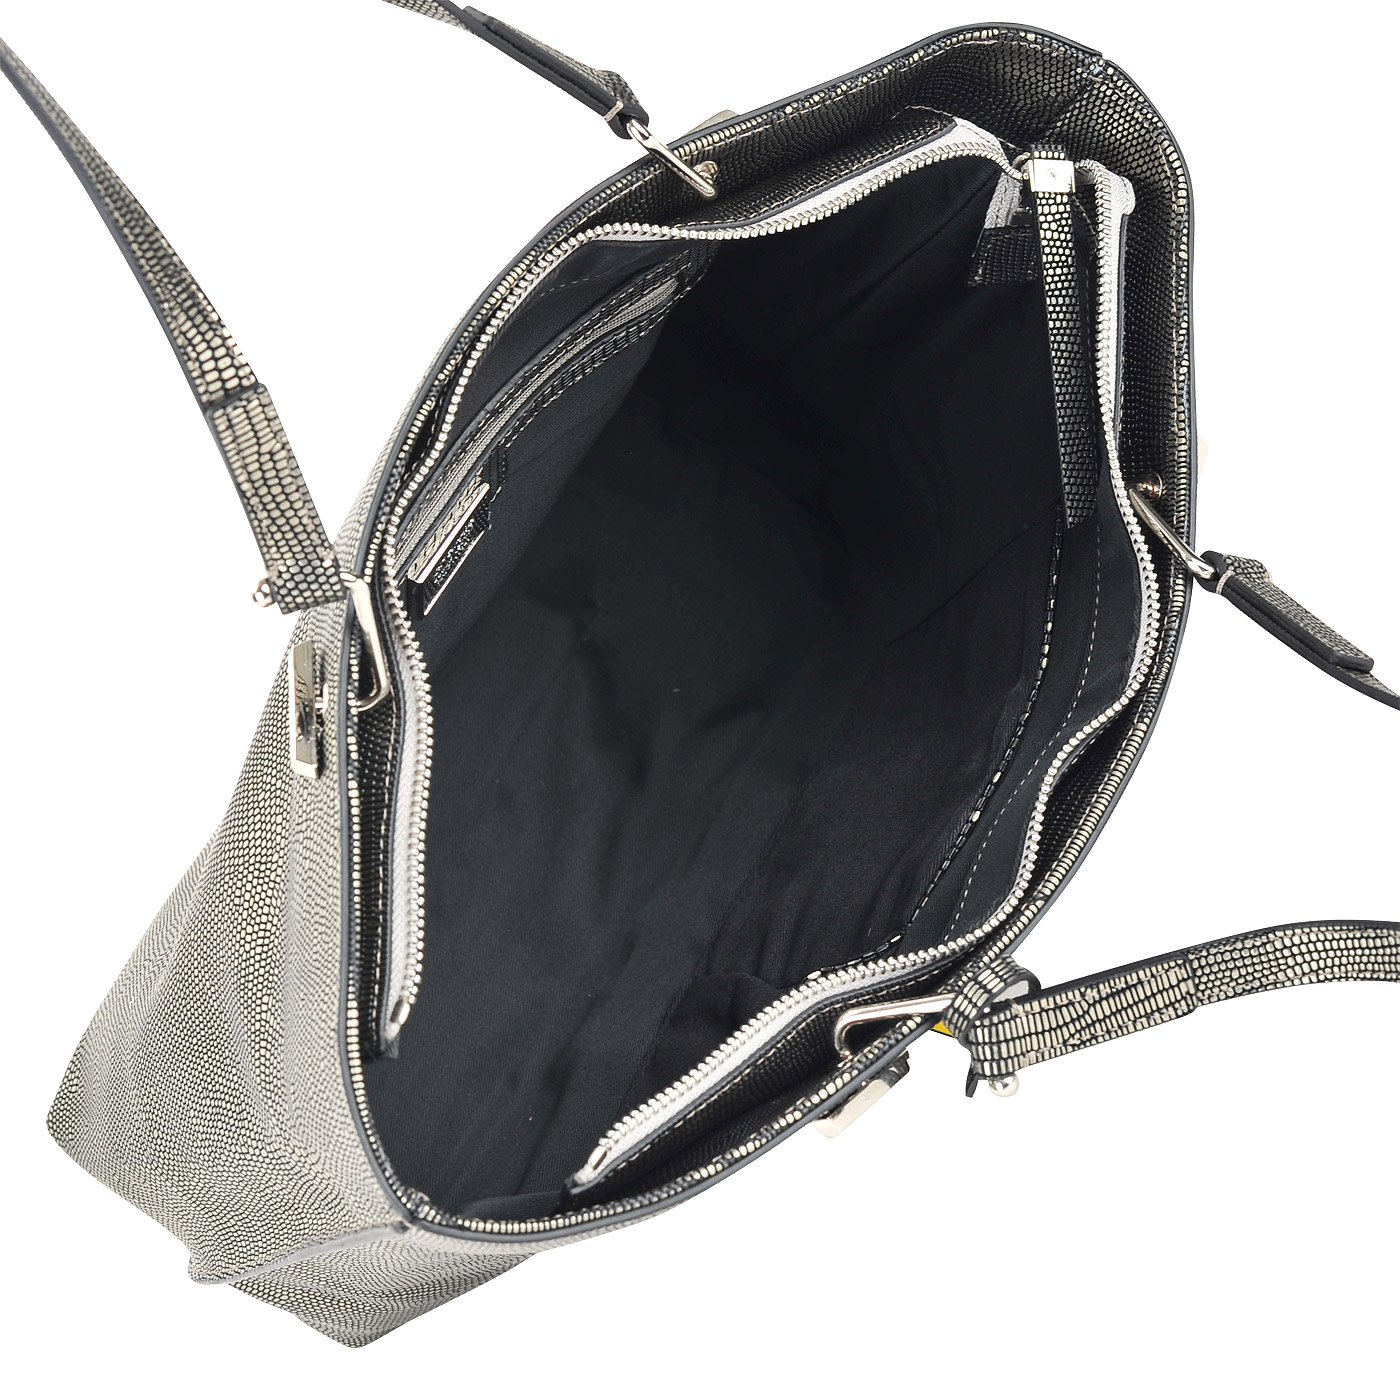 Вместительная кожаная сумка с выделкой под рептилию Cromia Nocturne